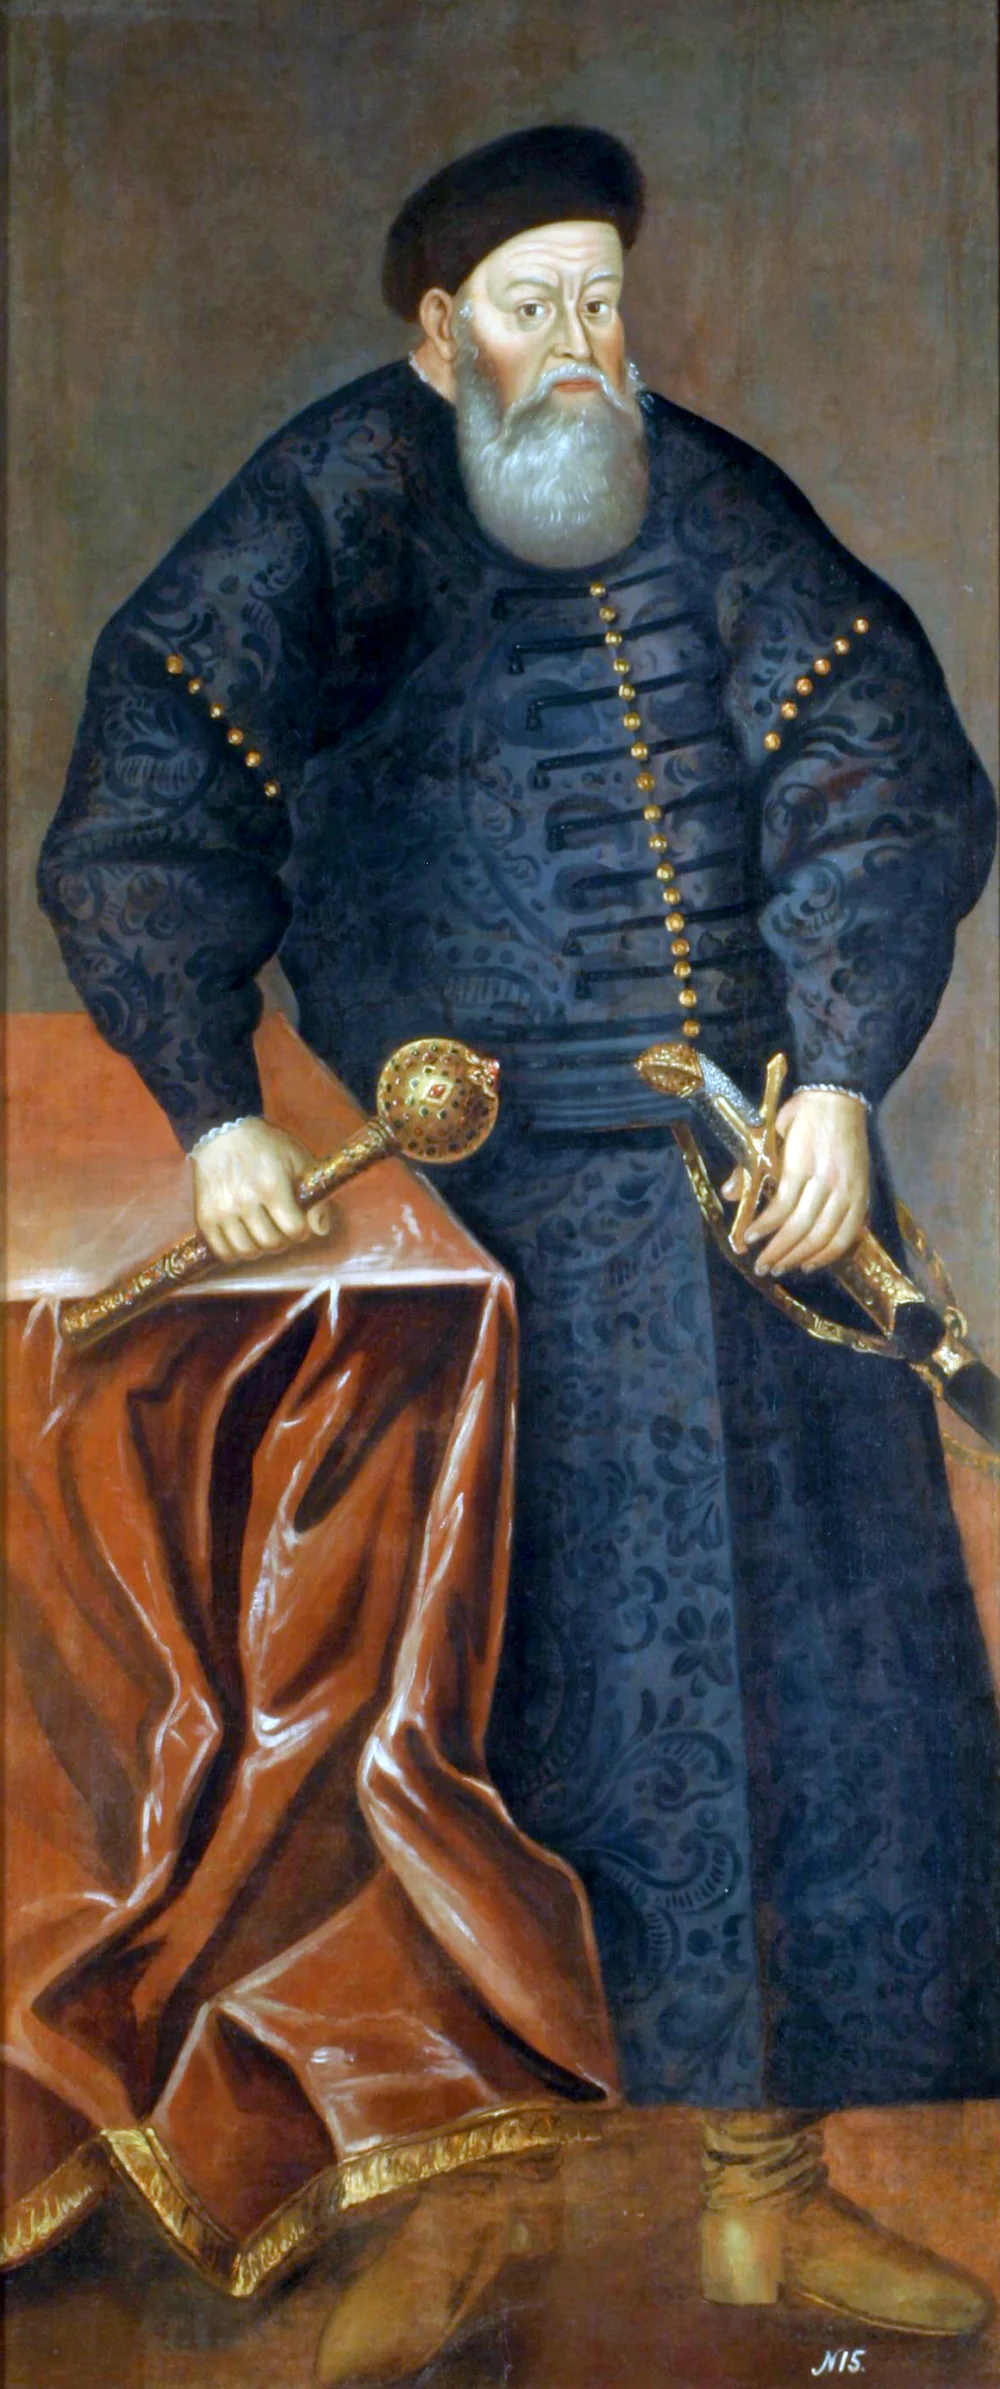 Белгісіз автор. Константин Острожскийдің Портреті(1460-1530) XVII ғасыр/Wikimedia Commons